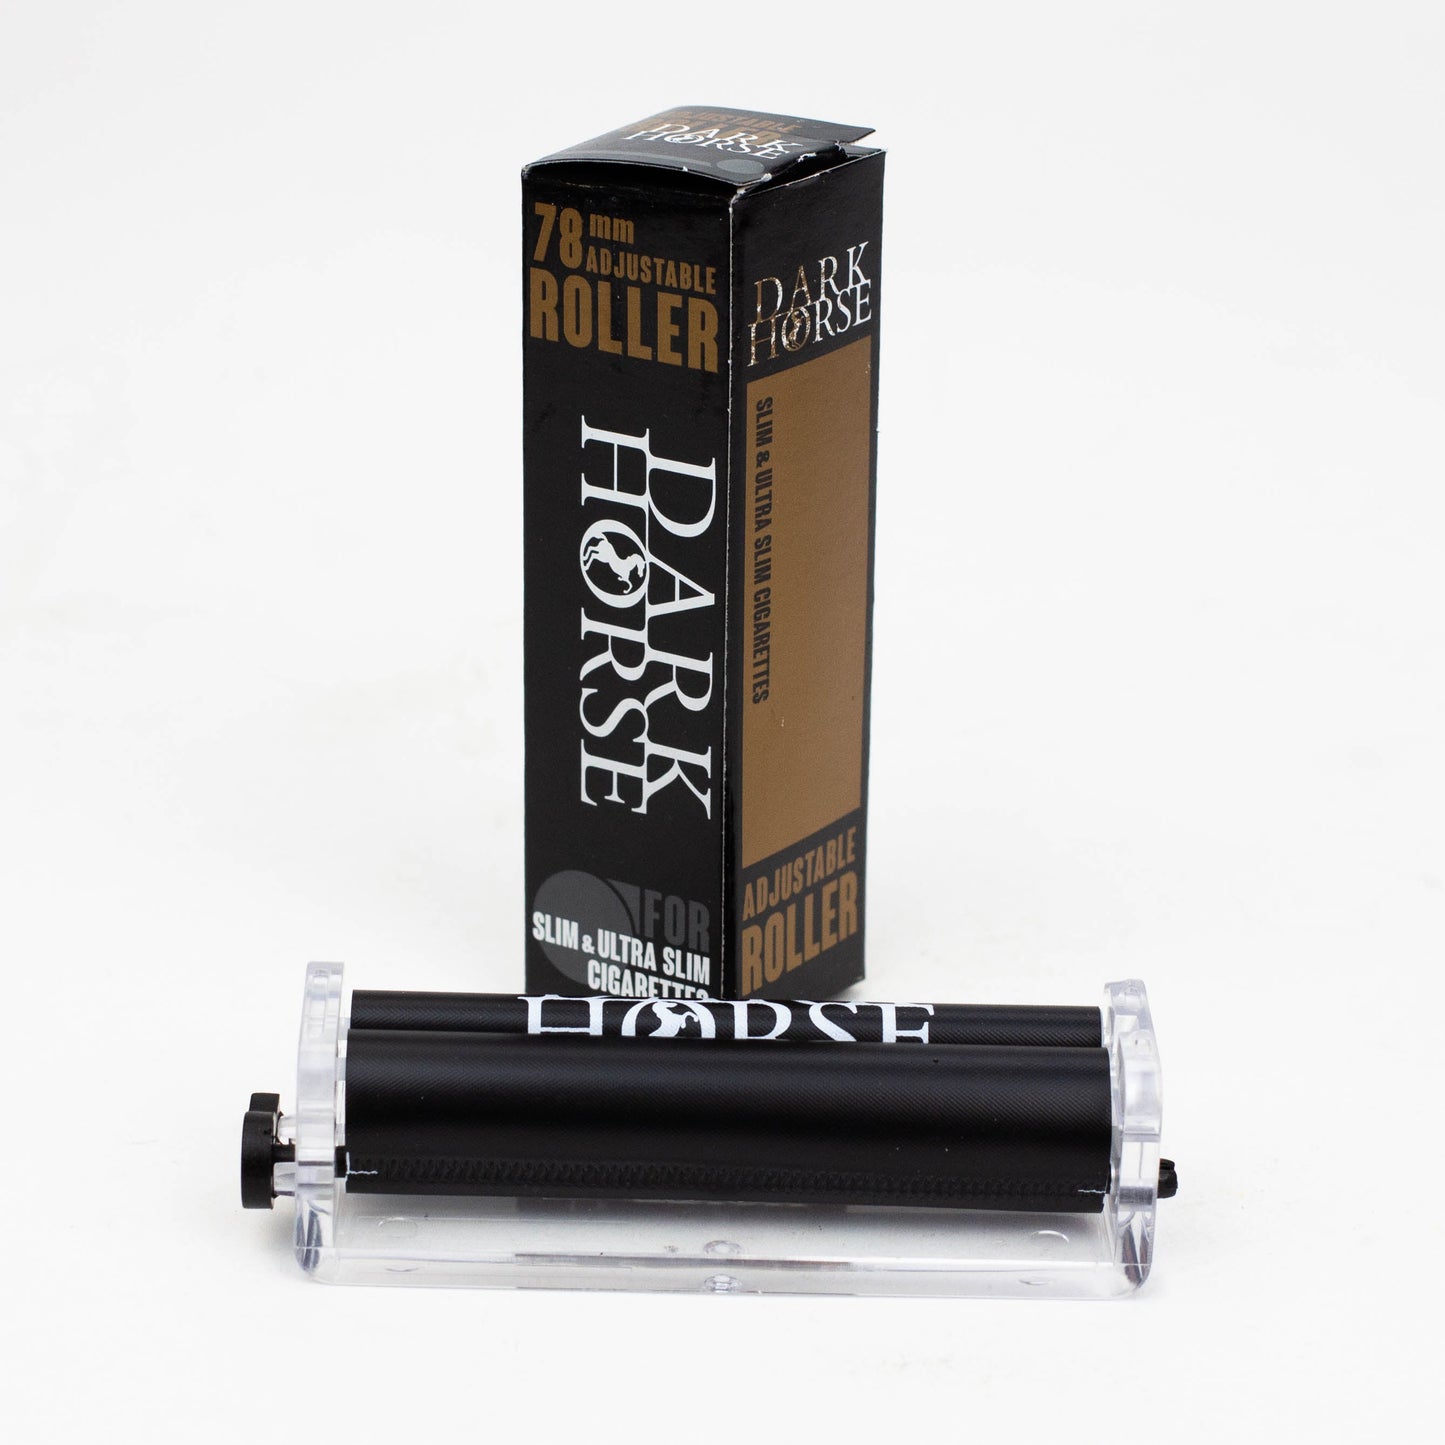 Adjustable 78 mm DARK HORSE roller for Slim and Ultra slim cigarettes - BLACK_1